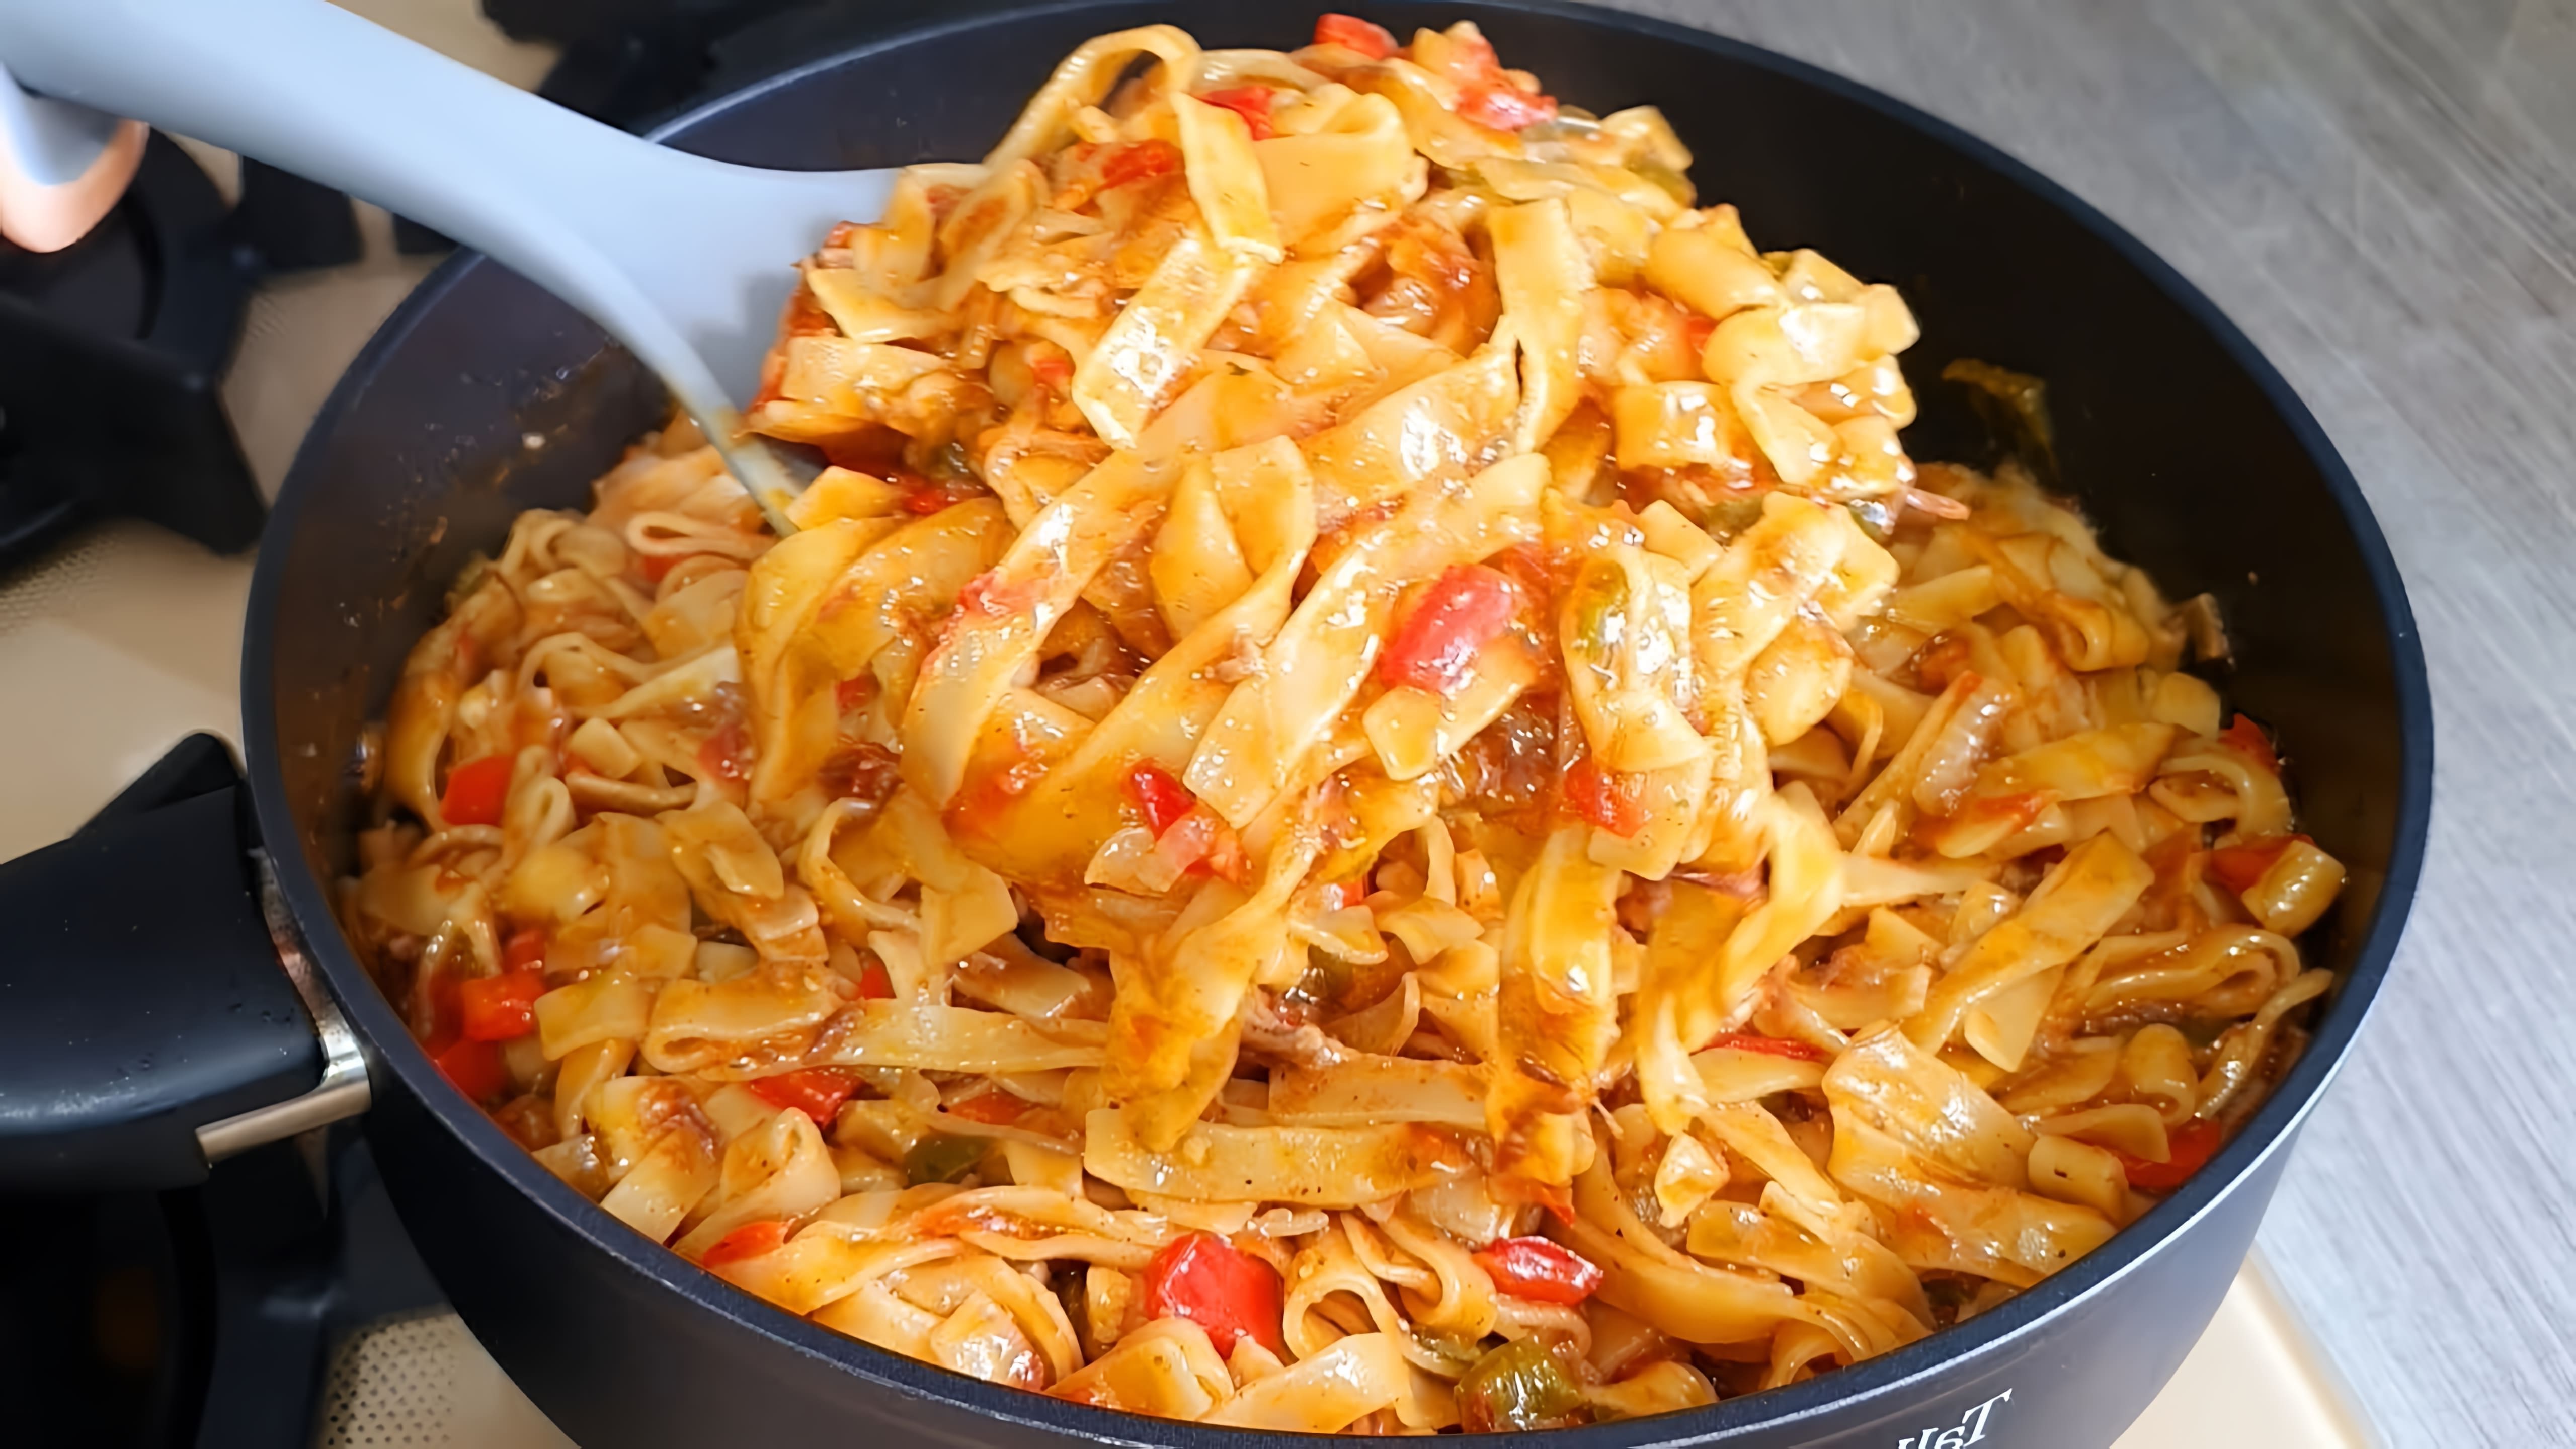 В этом видео-ролике вы увидите очень простой и быстрый рецепт приготовления макарон с овощами на сковороде